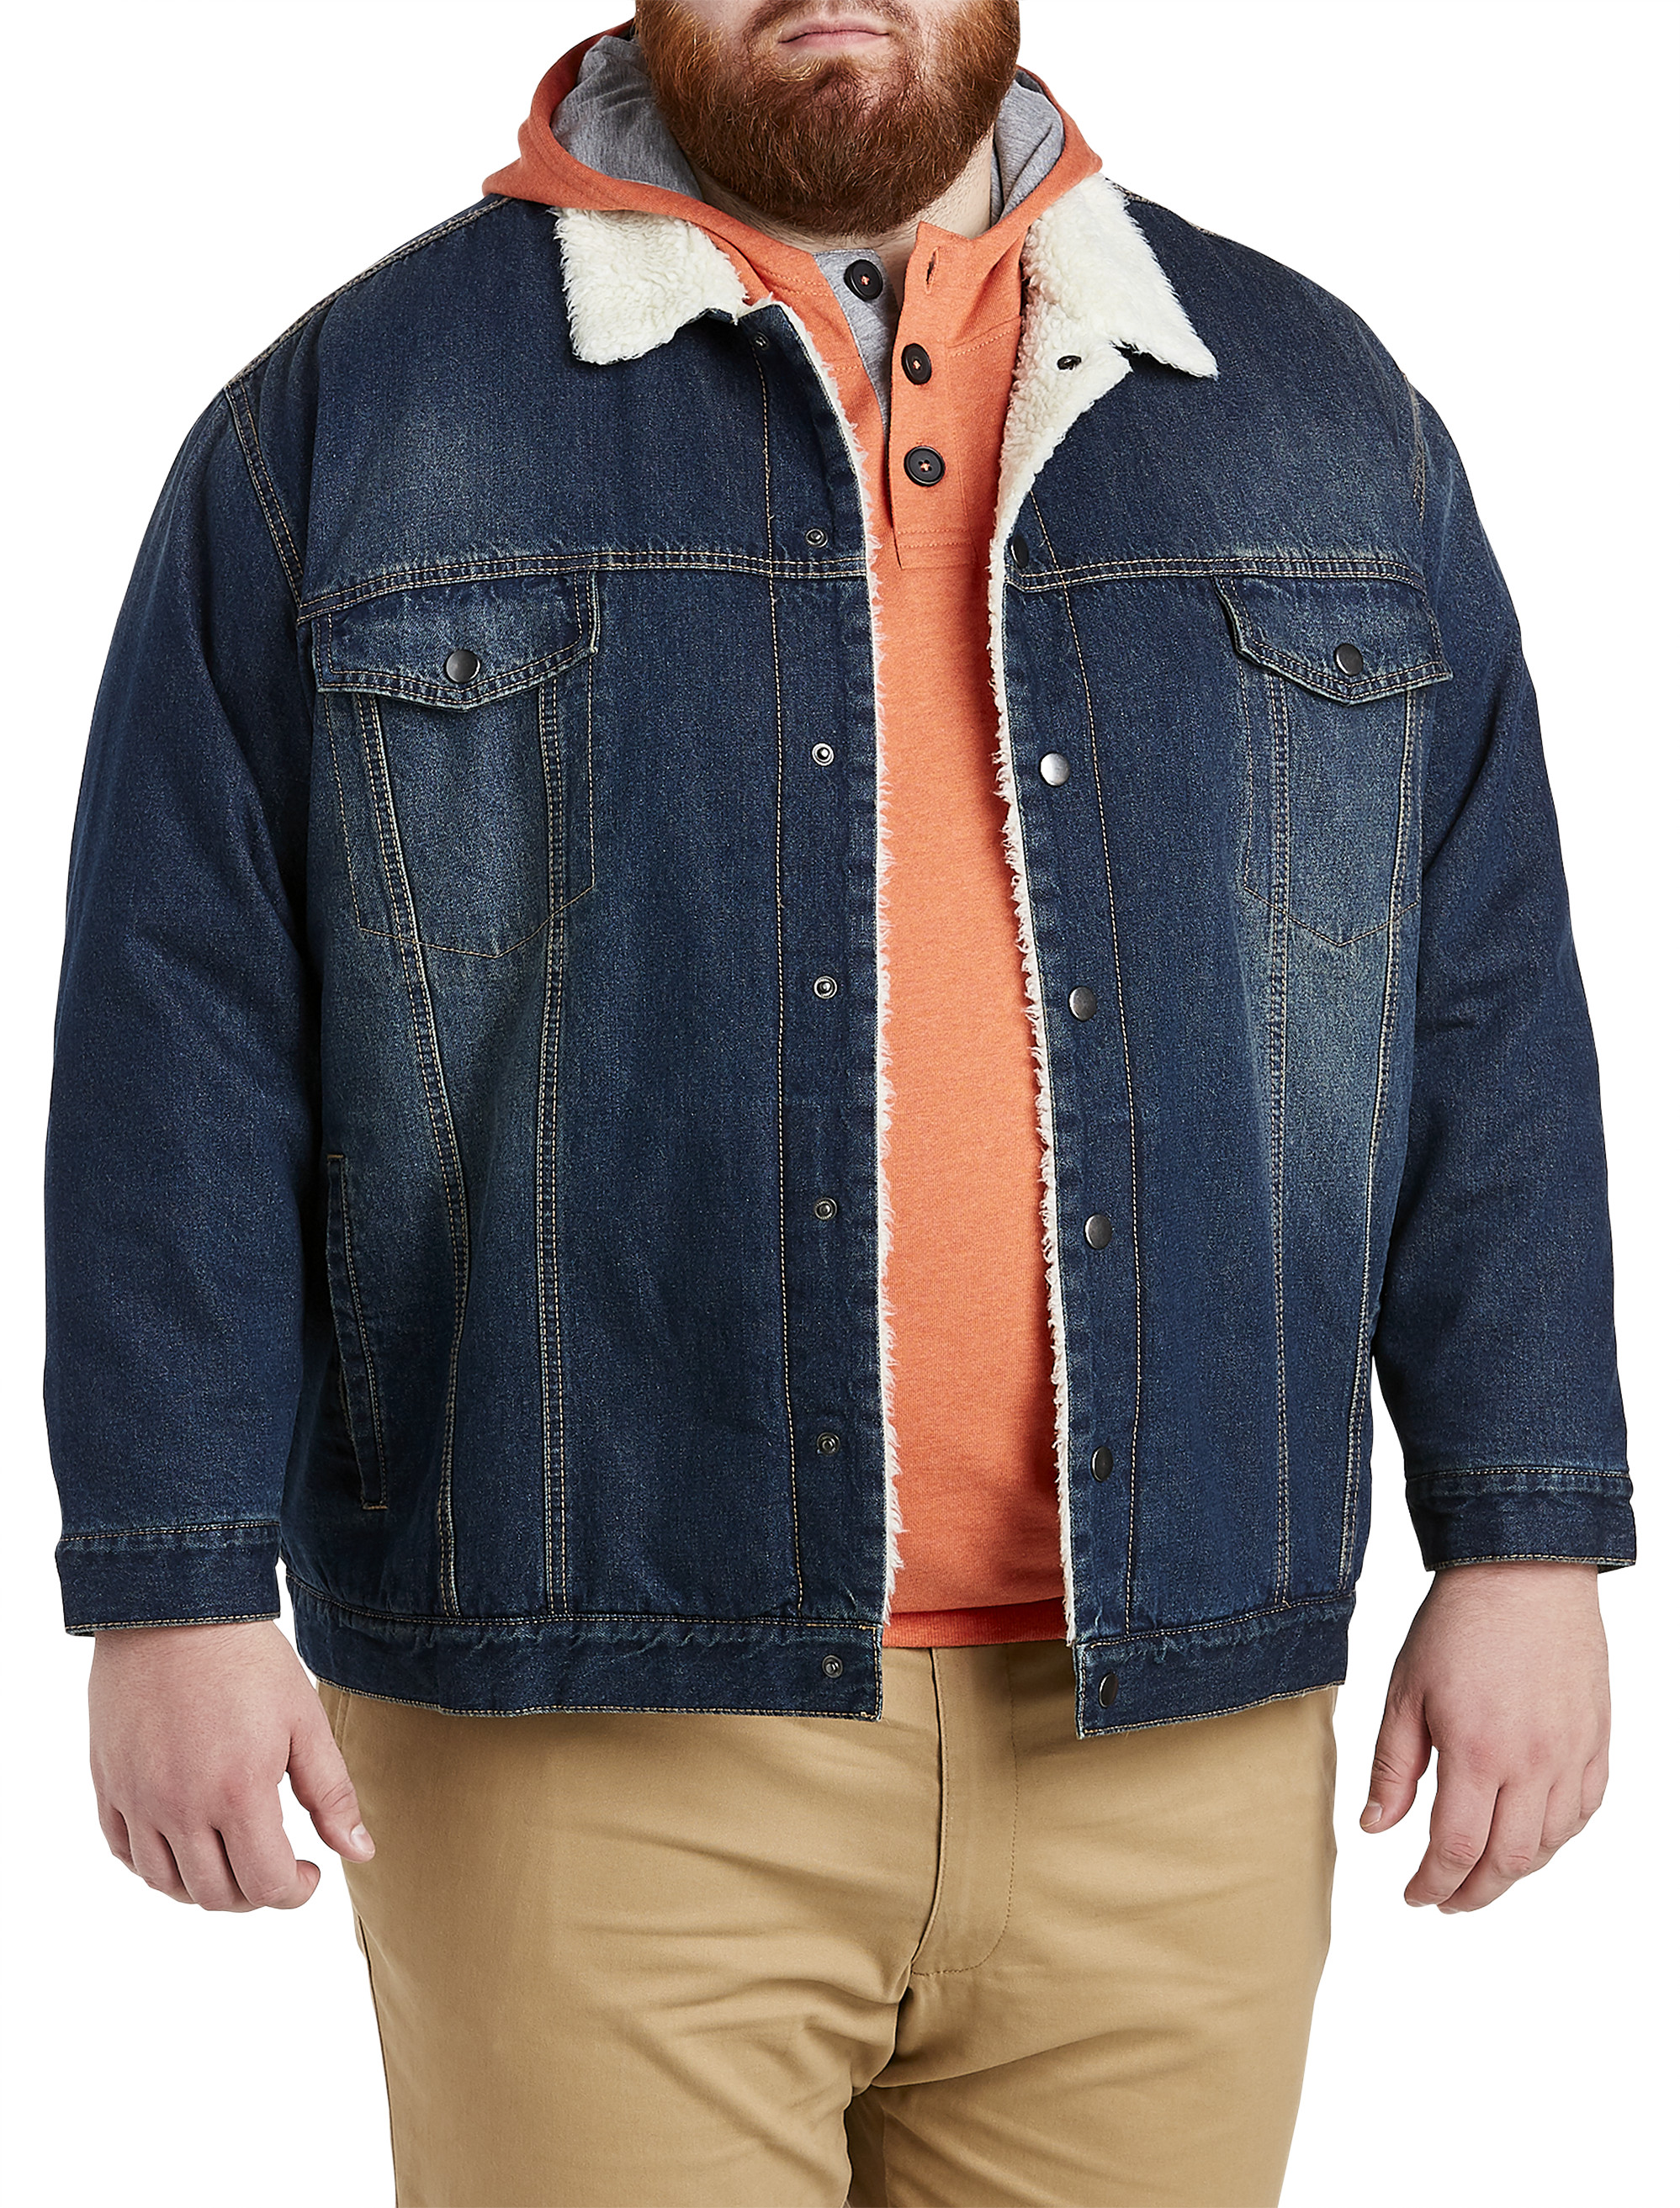 West Louis, Jackets & Coats, West Louis Lined Denim Jacket Men Size Xl